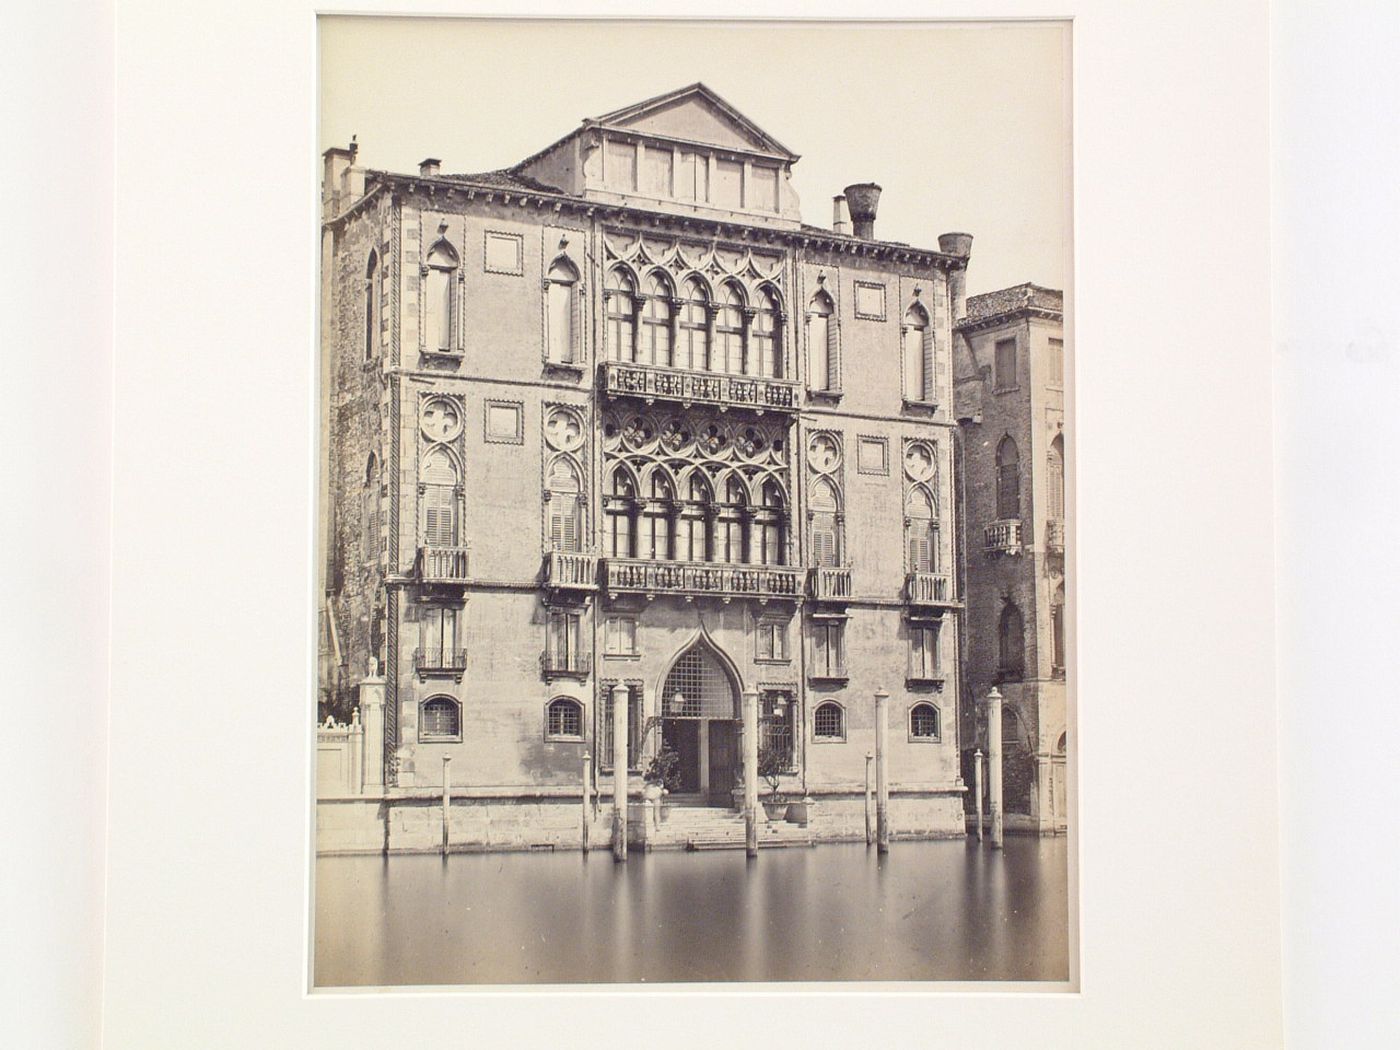 Palazzo Cavalli, Venice, Italy